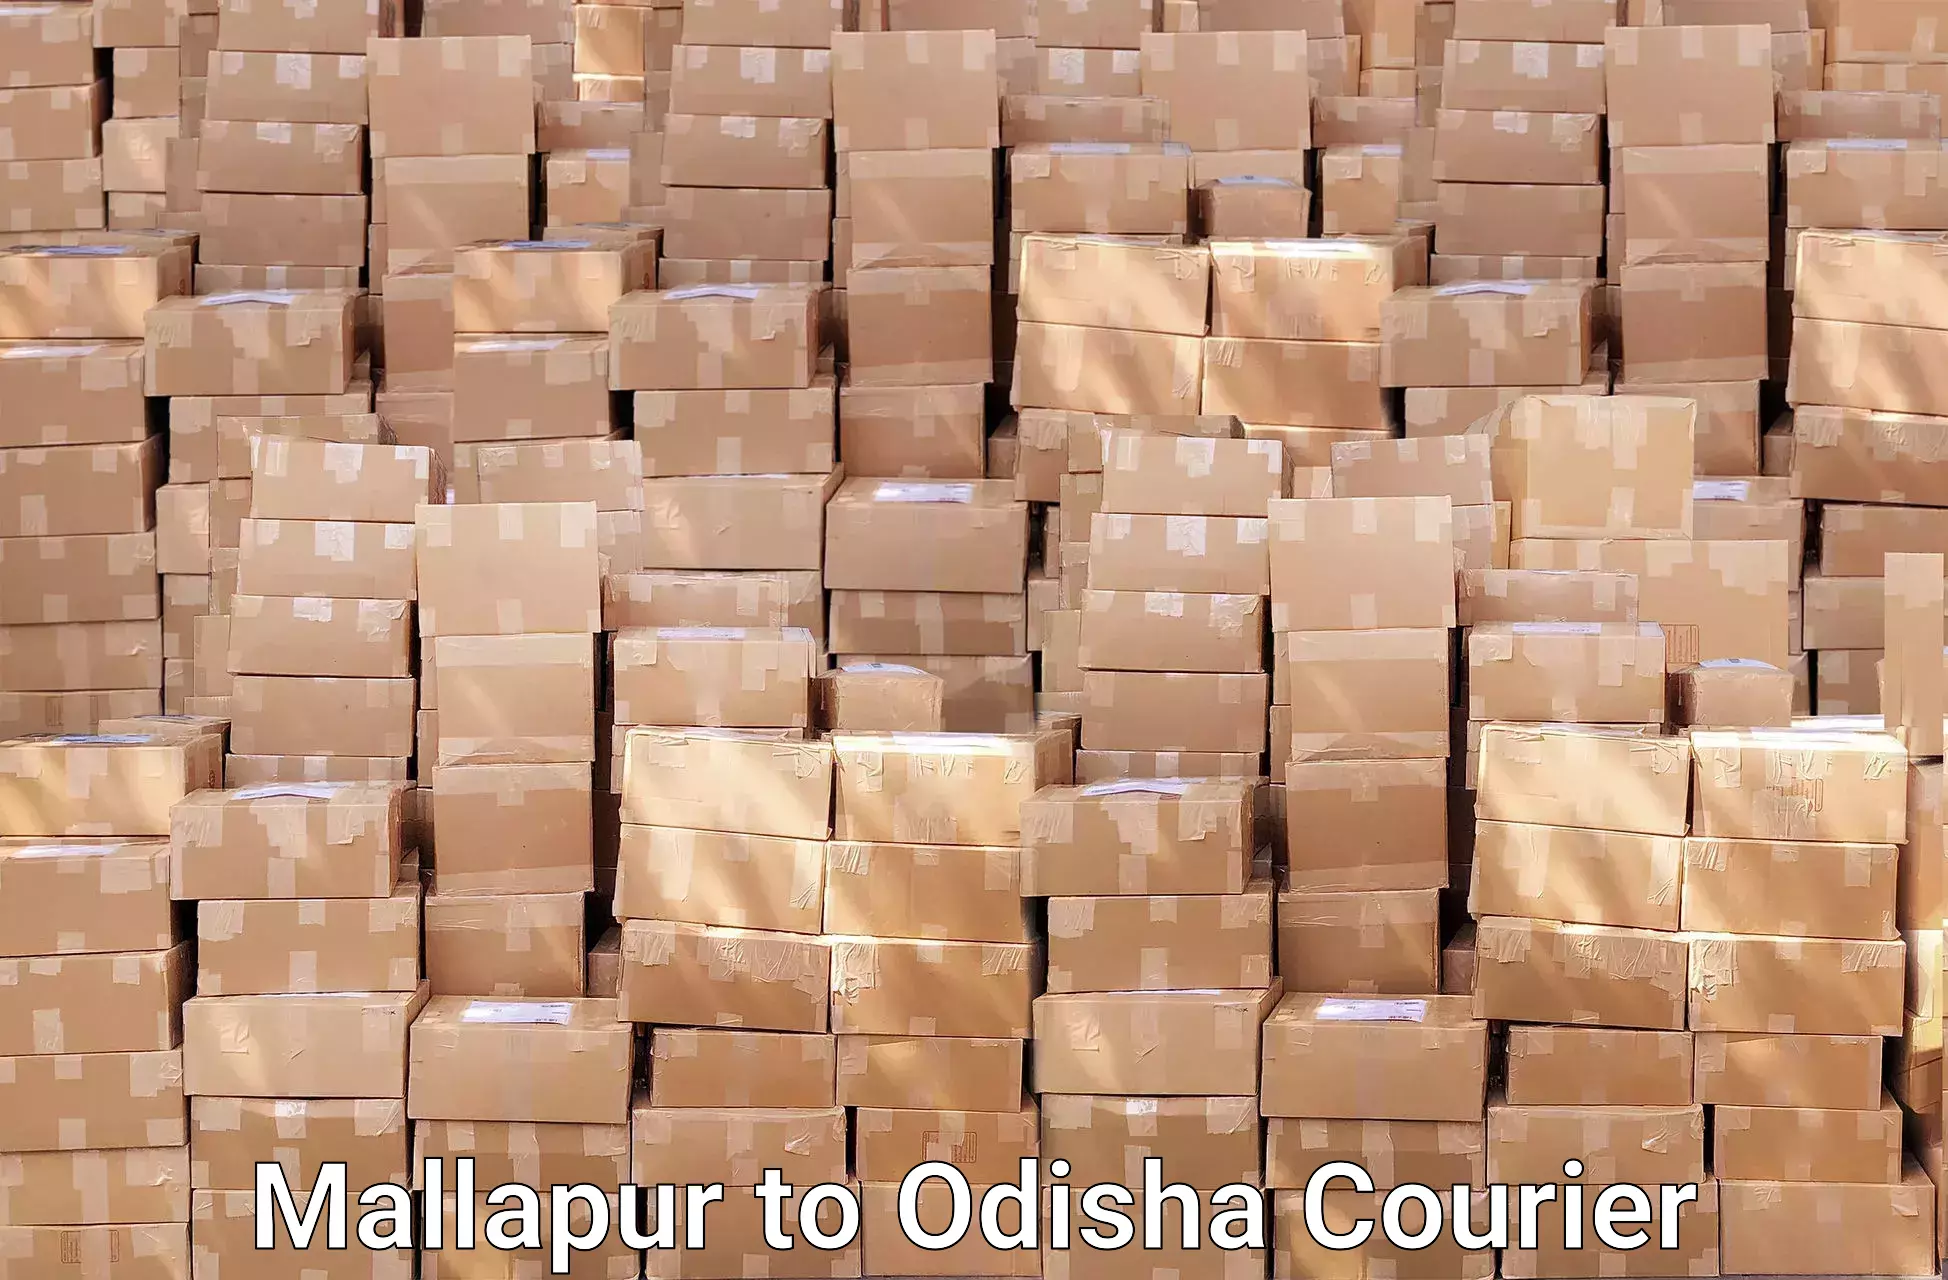 Furniture transport professionals Mallapur to Badagada